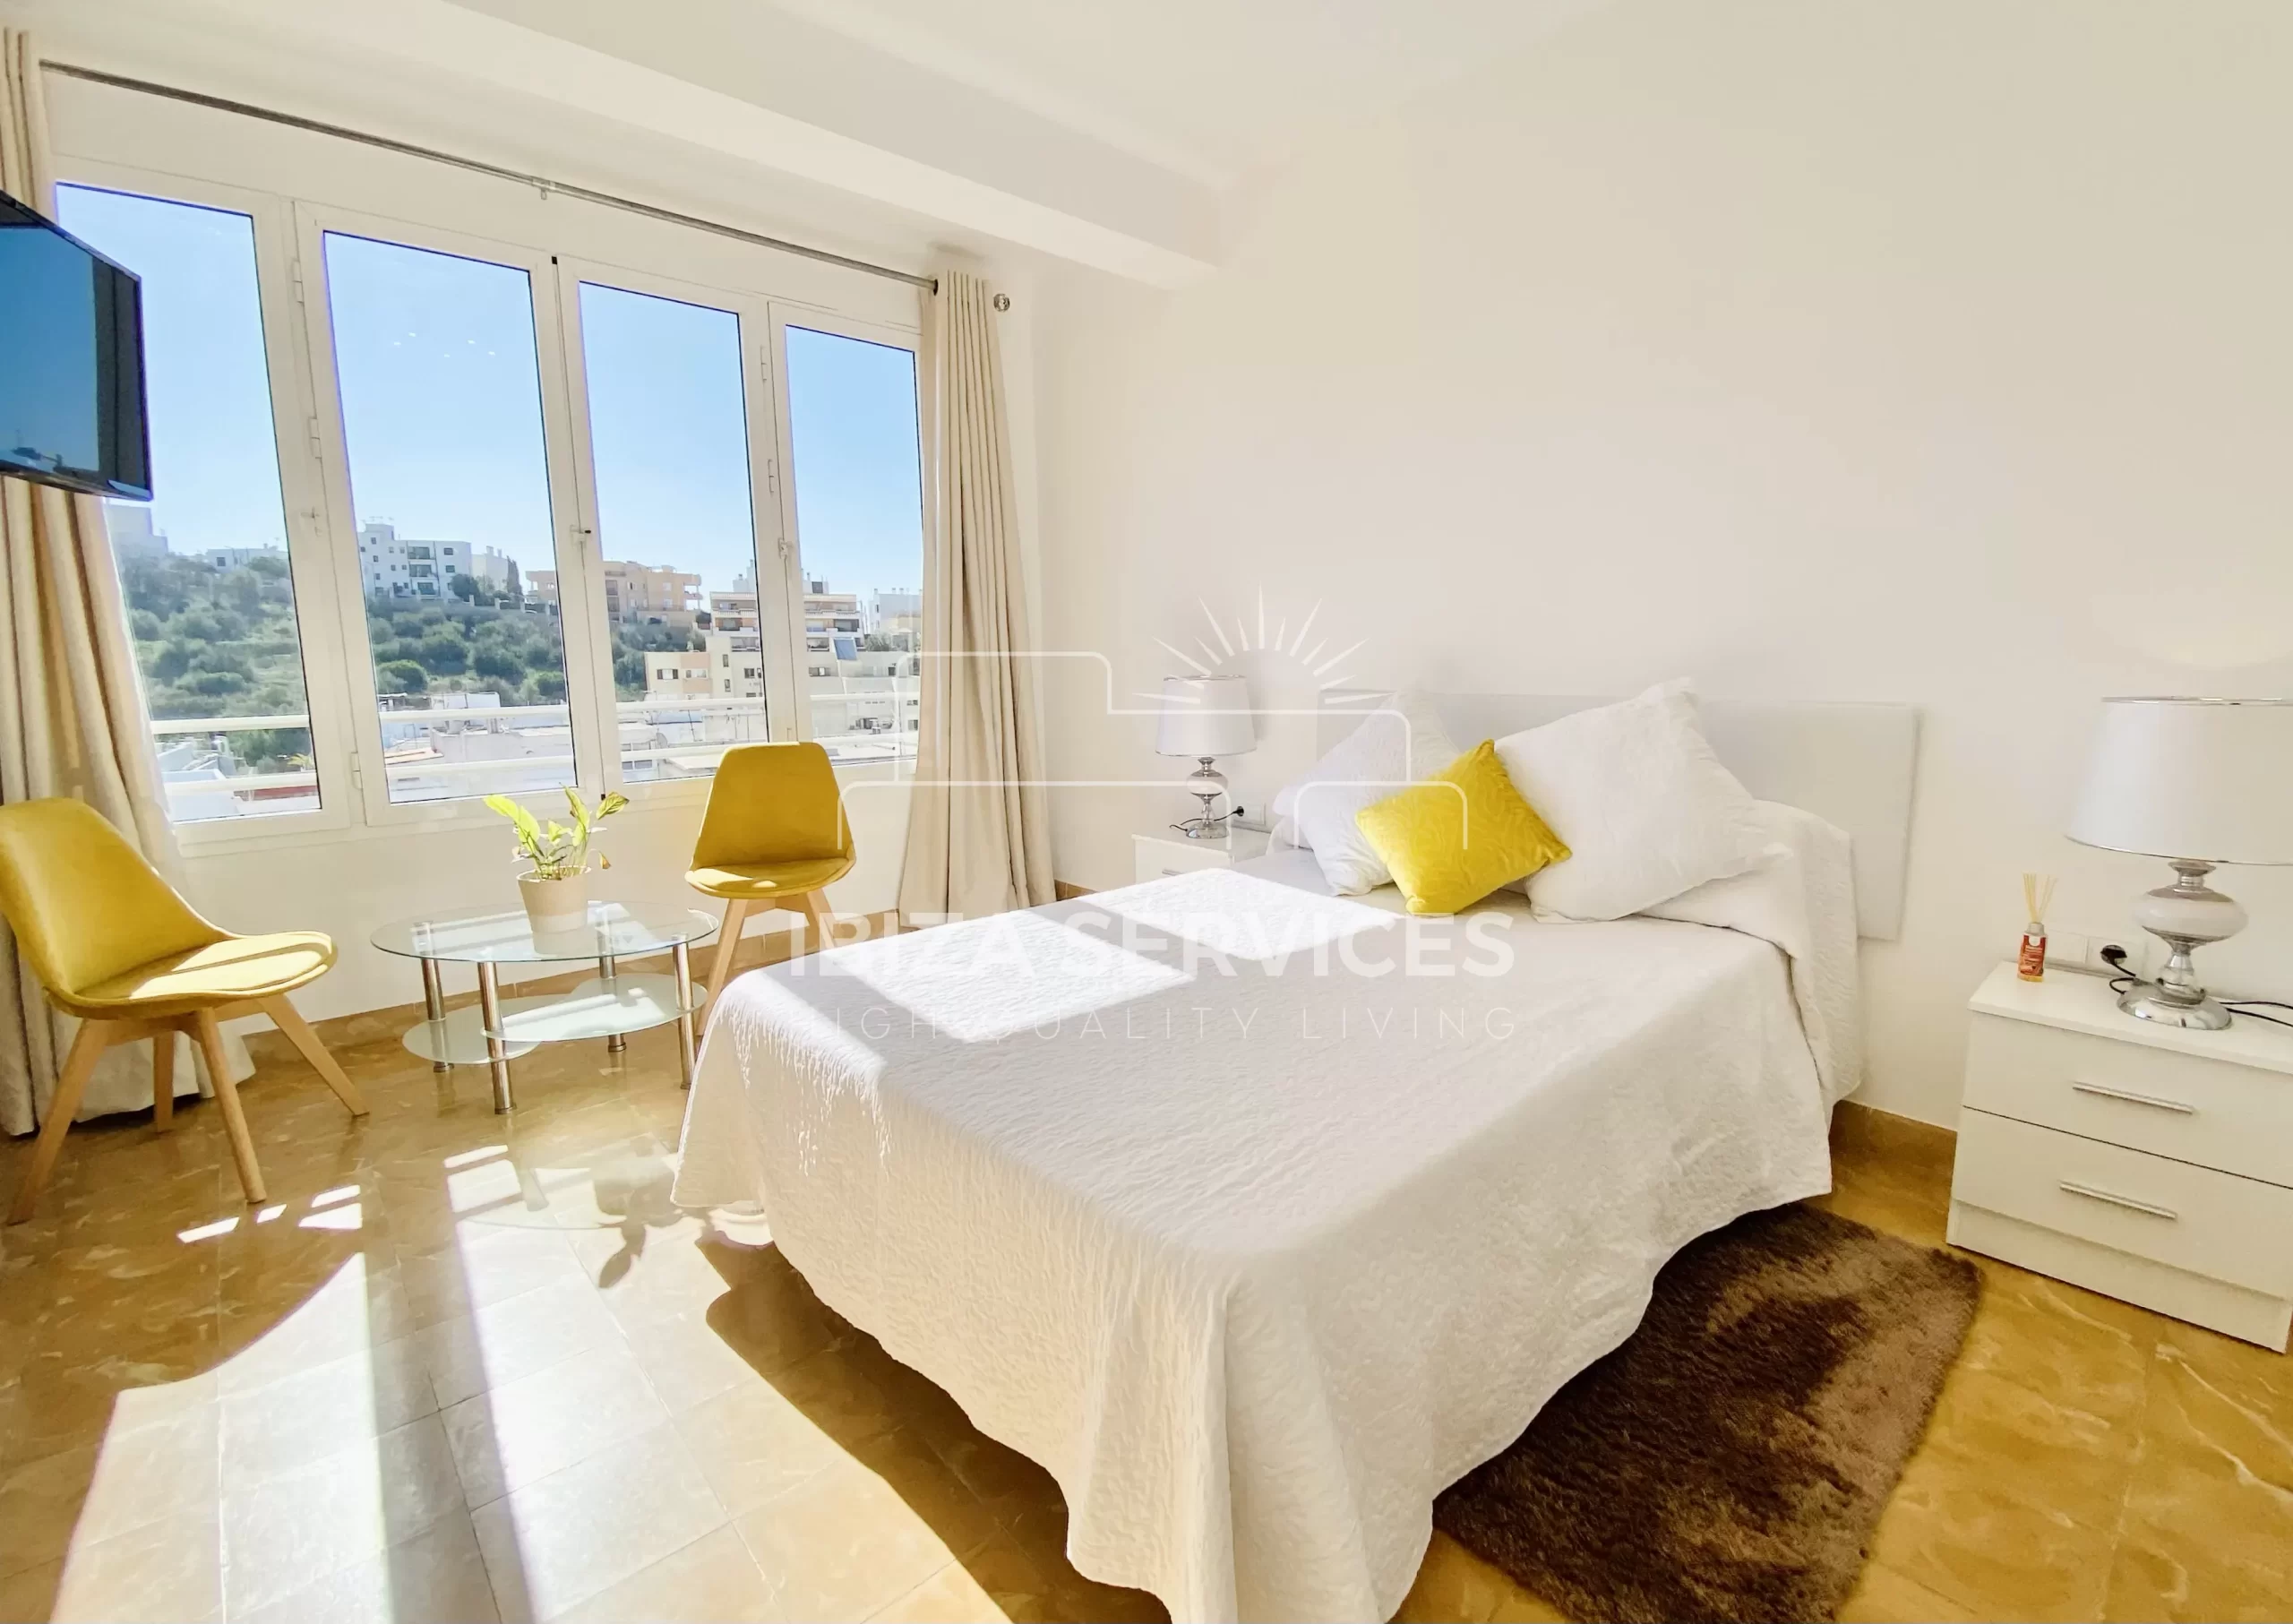 En location de longue durée appartement de 2 chambres à Ibiza ville